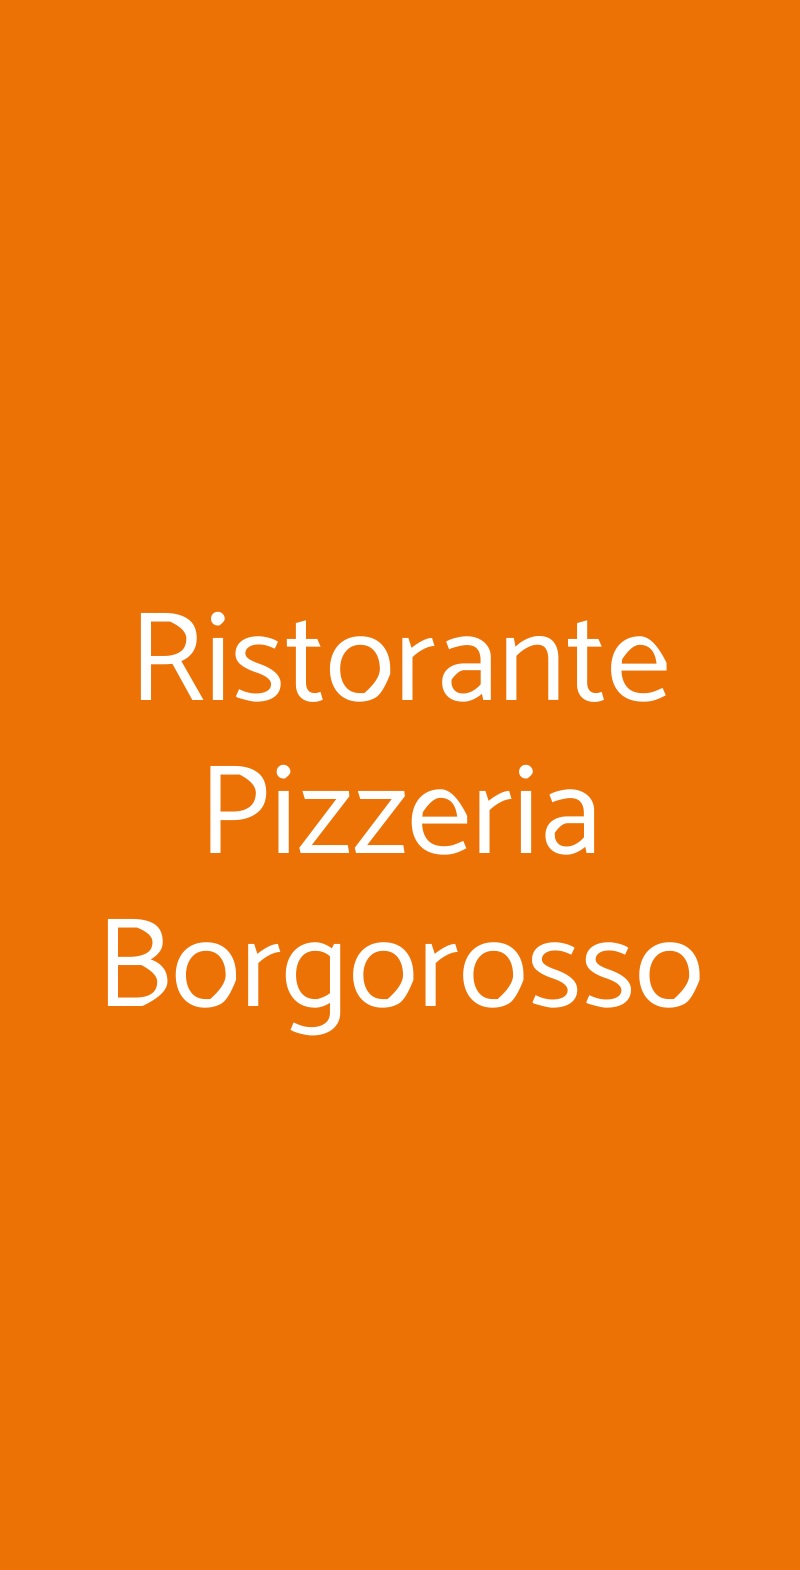 Ristorante Pizzeria Borgorosso Guardavalle menù 1 pagina